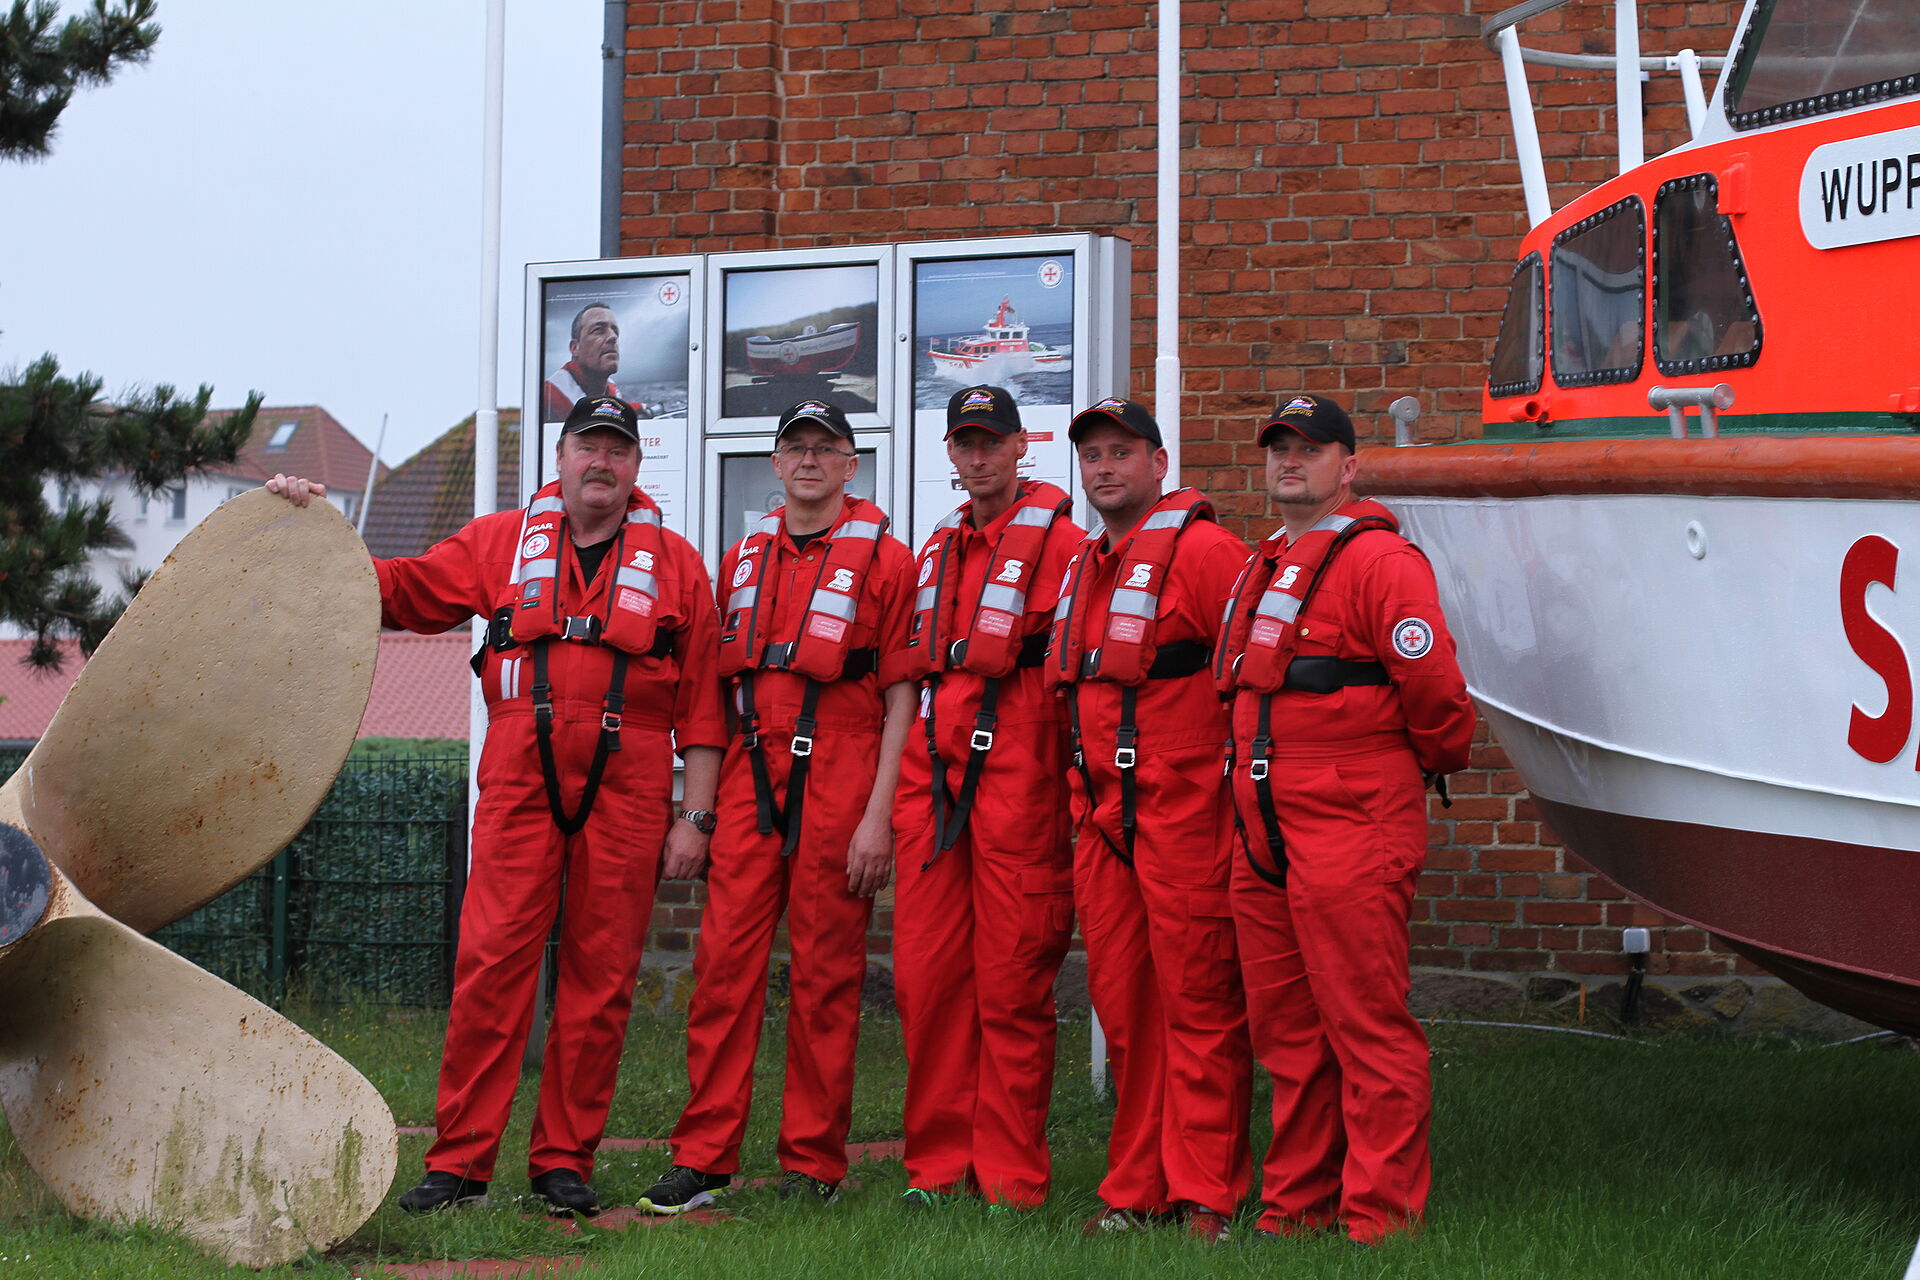 Gruppenfoto einer Seenotretter-Crew zwischen Schiffsschraube und Seenotrettungsboot